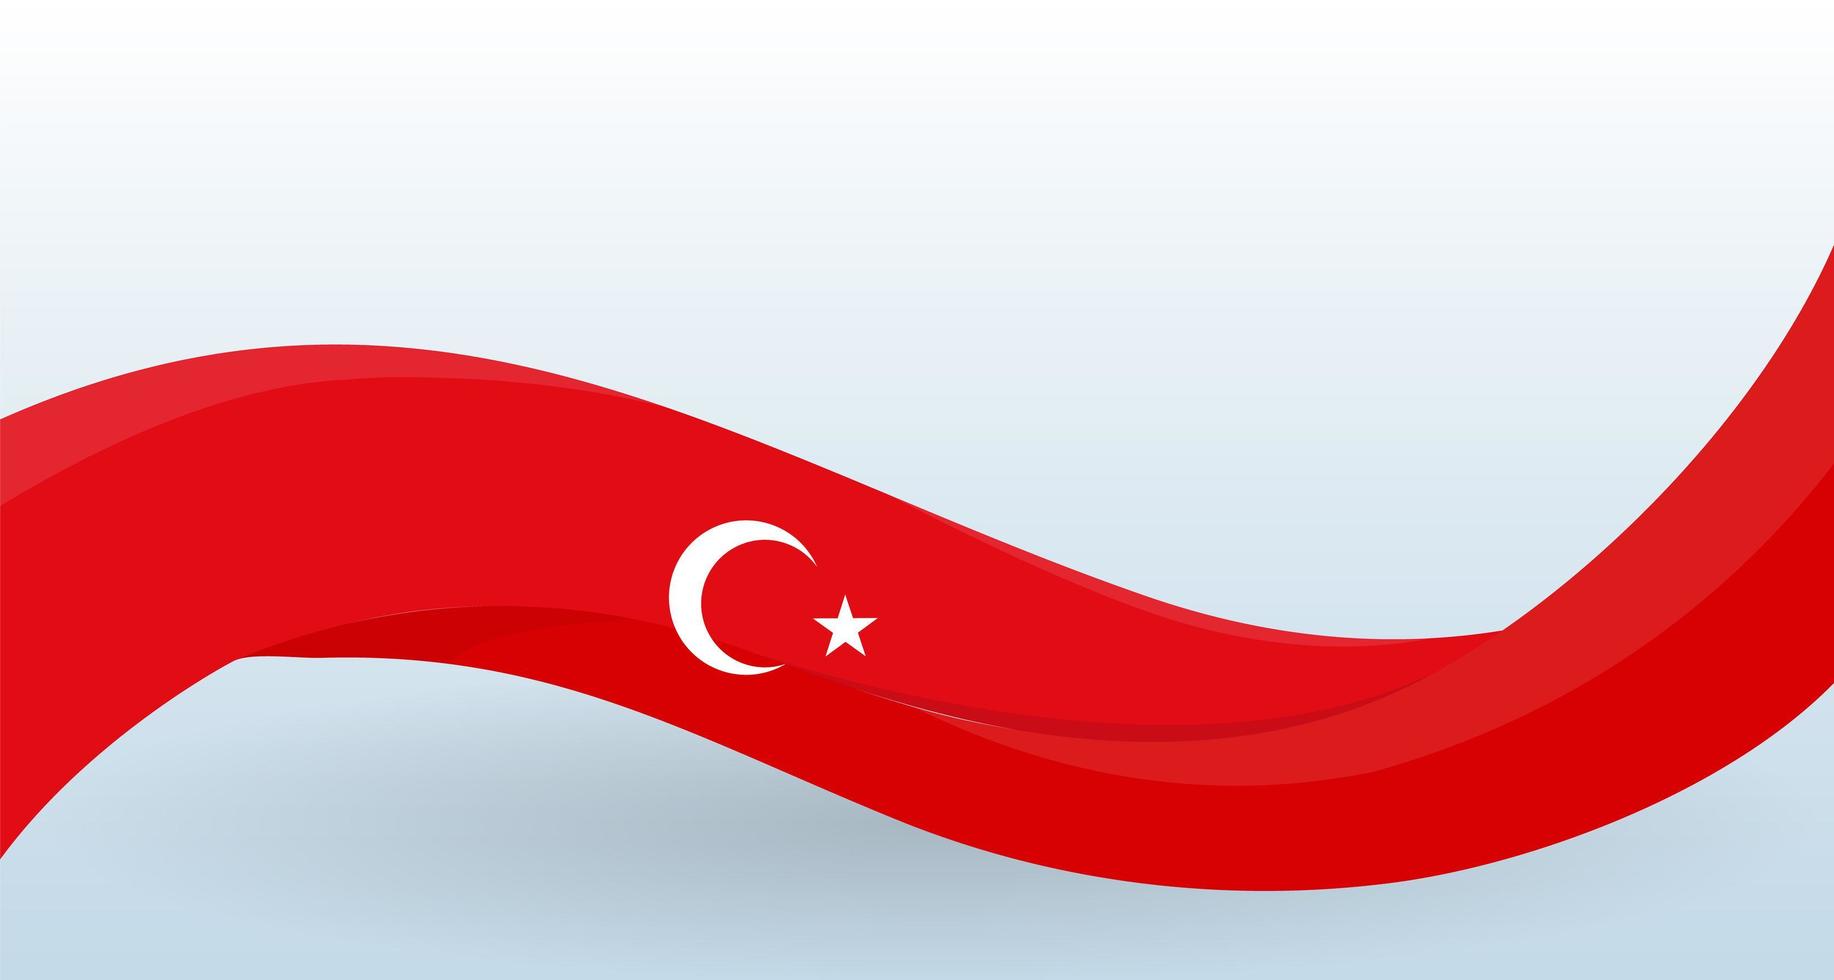 drapeau national de la Turquie. forme inhabituelle ondulante. modèle de conception pour la décoration de flyer et carte, affiche, bannière et logo. illustration vectorielle isolée. vecteur